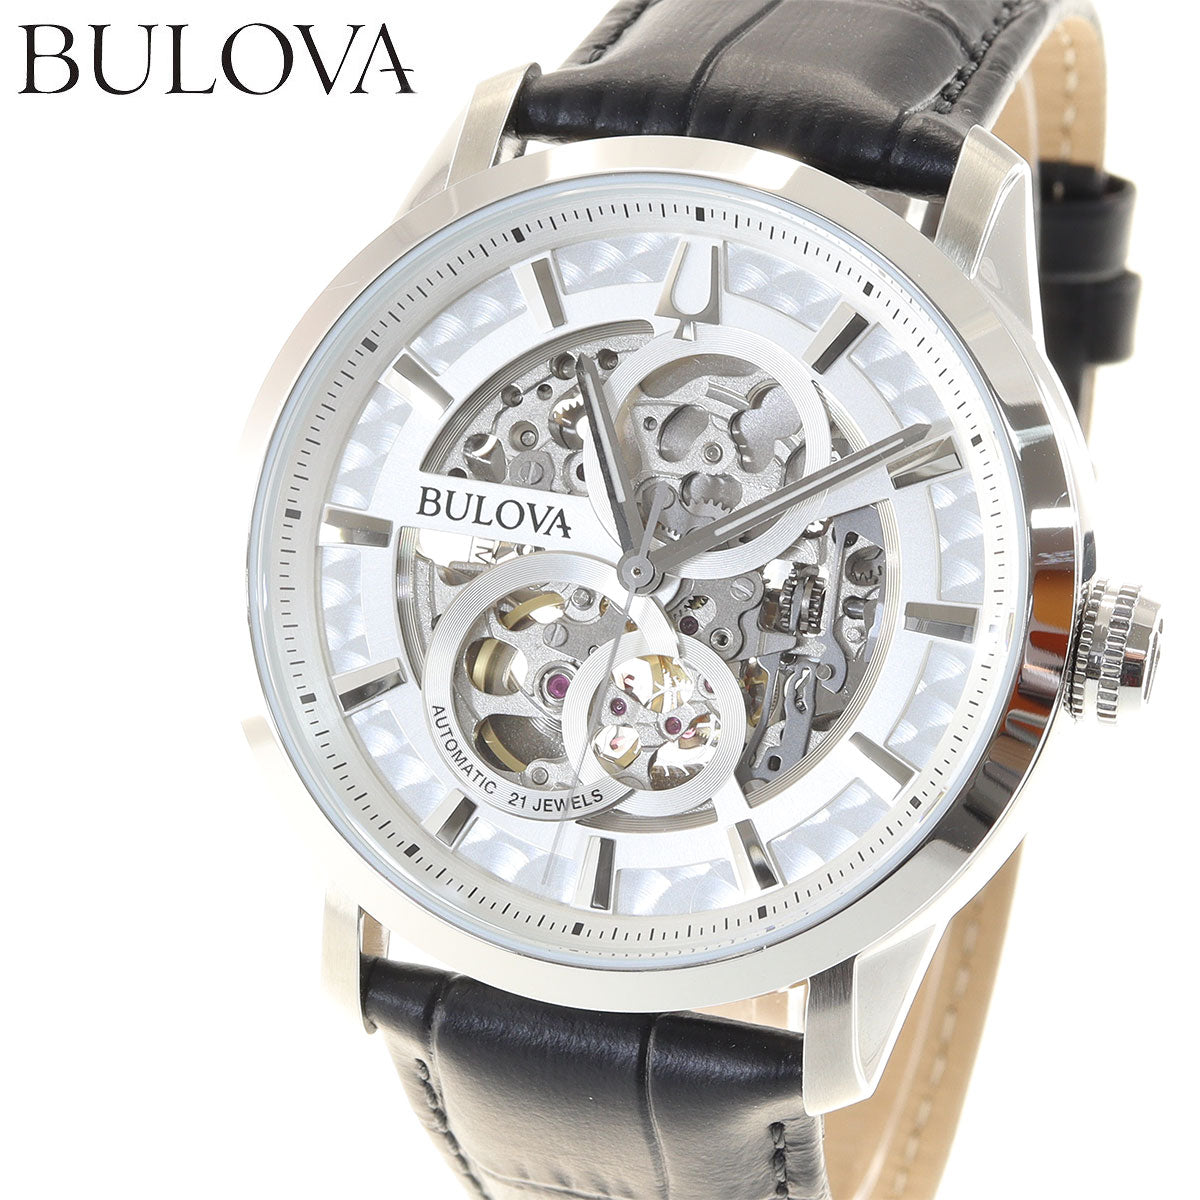 即納 ブローバ Bulova メンズ腕時計 98D116 ケース幅45mm